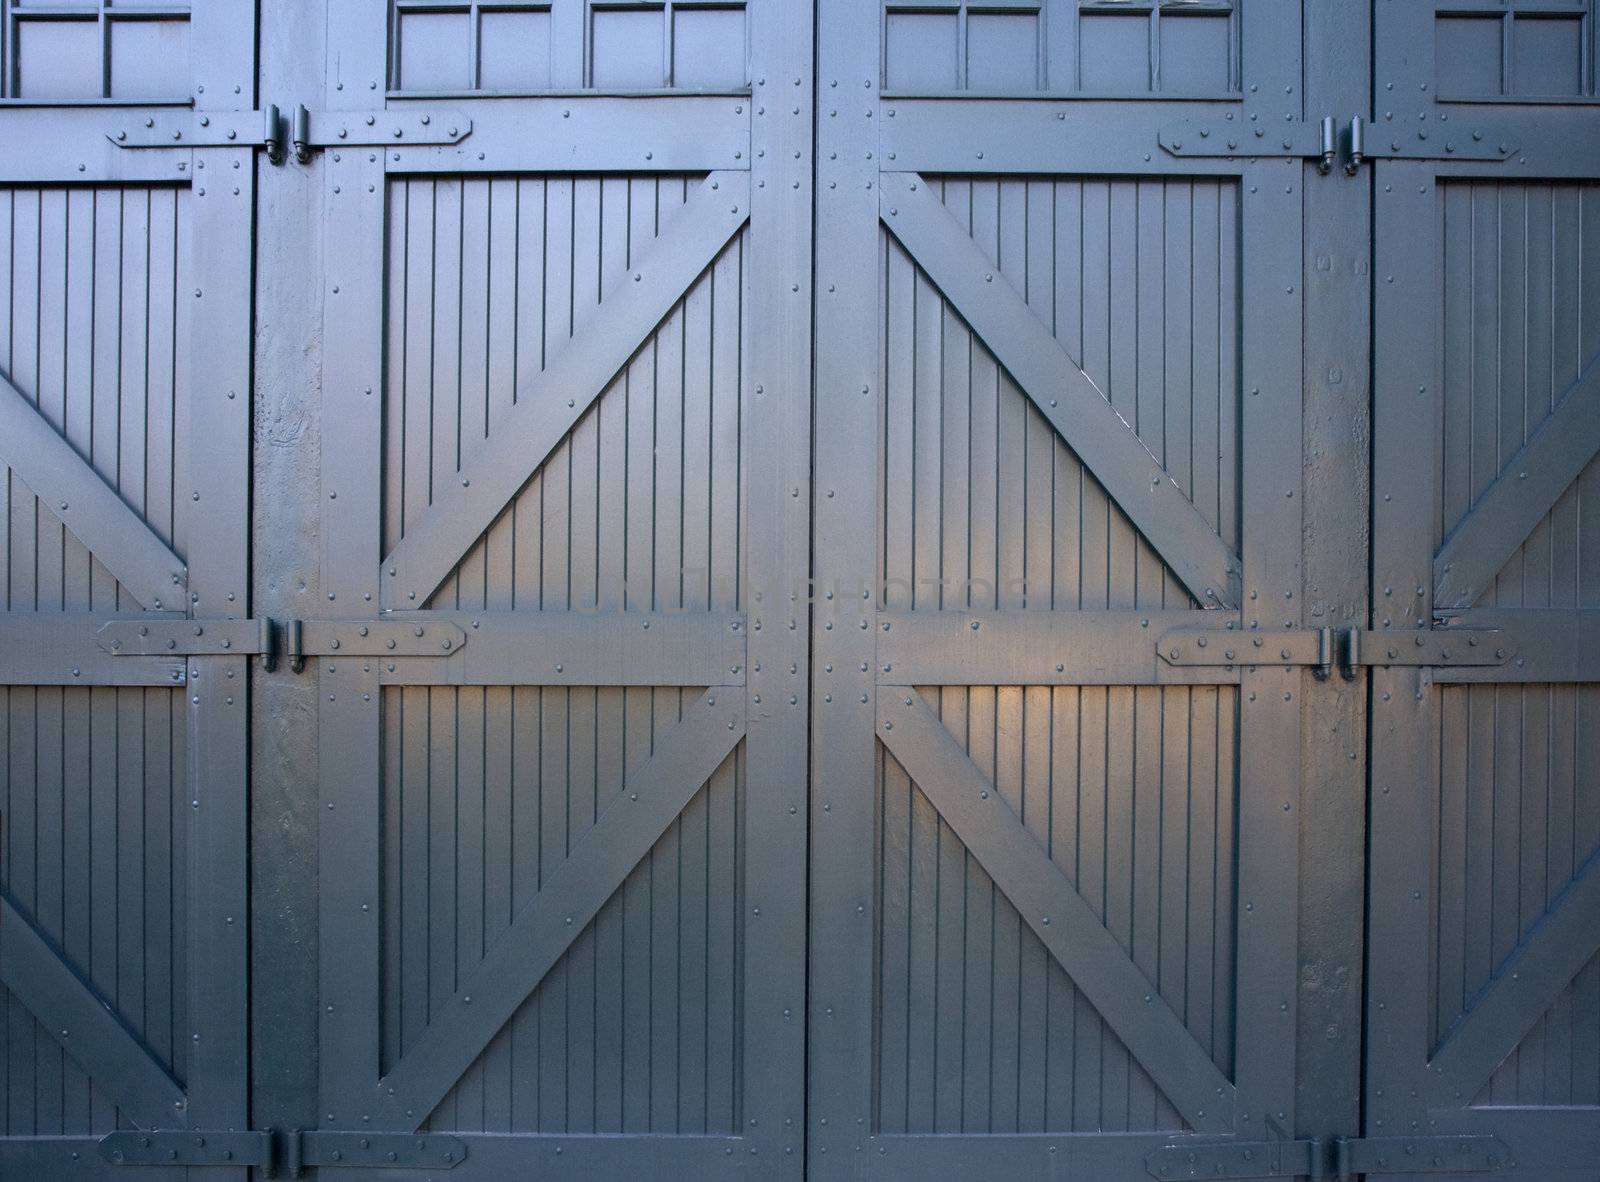 heavy wooden doors to industrial building by PixelsAway